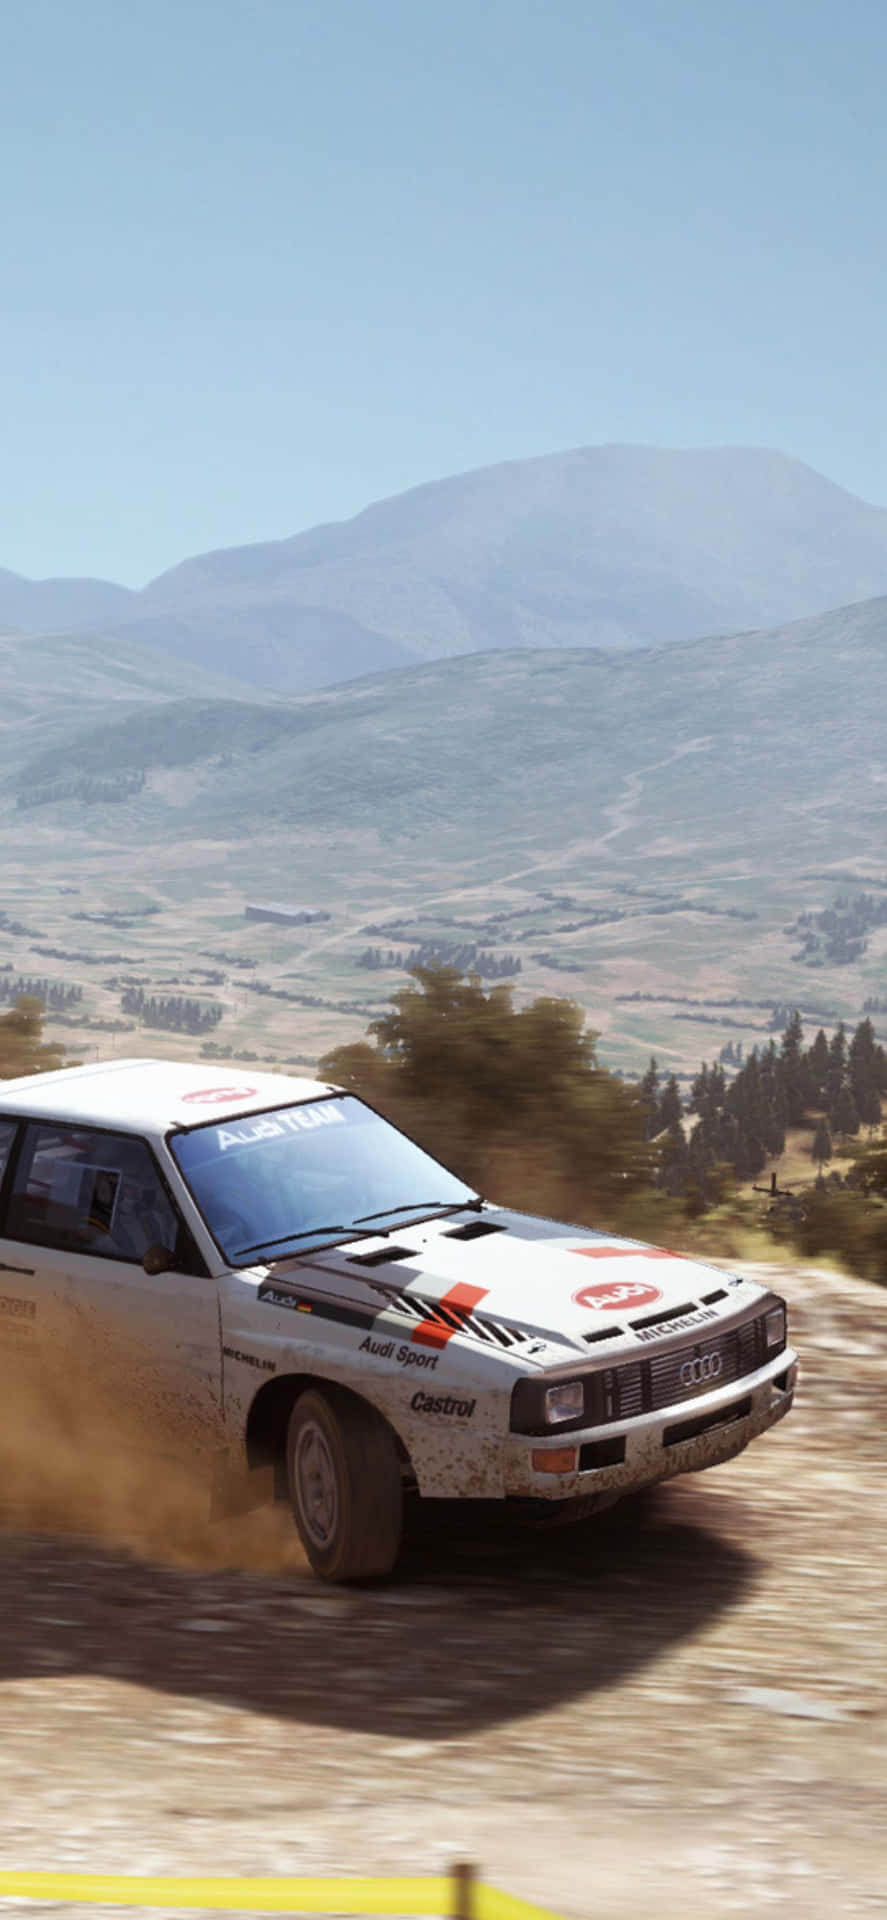 Njutav Äventyret Med Racing På Iphone X I Dirt Rally.